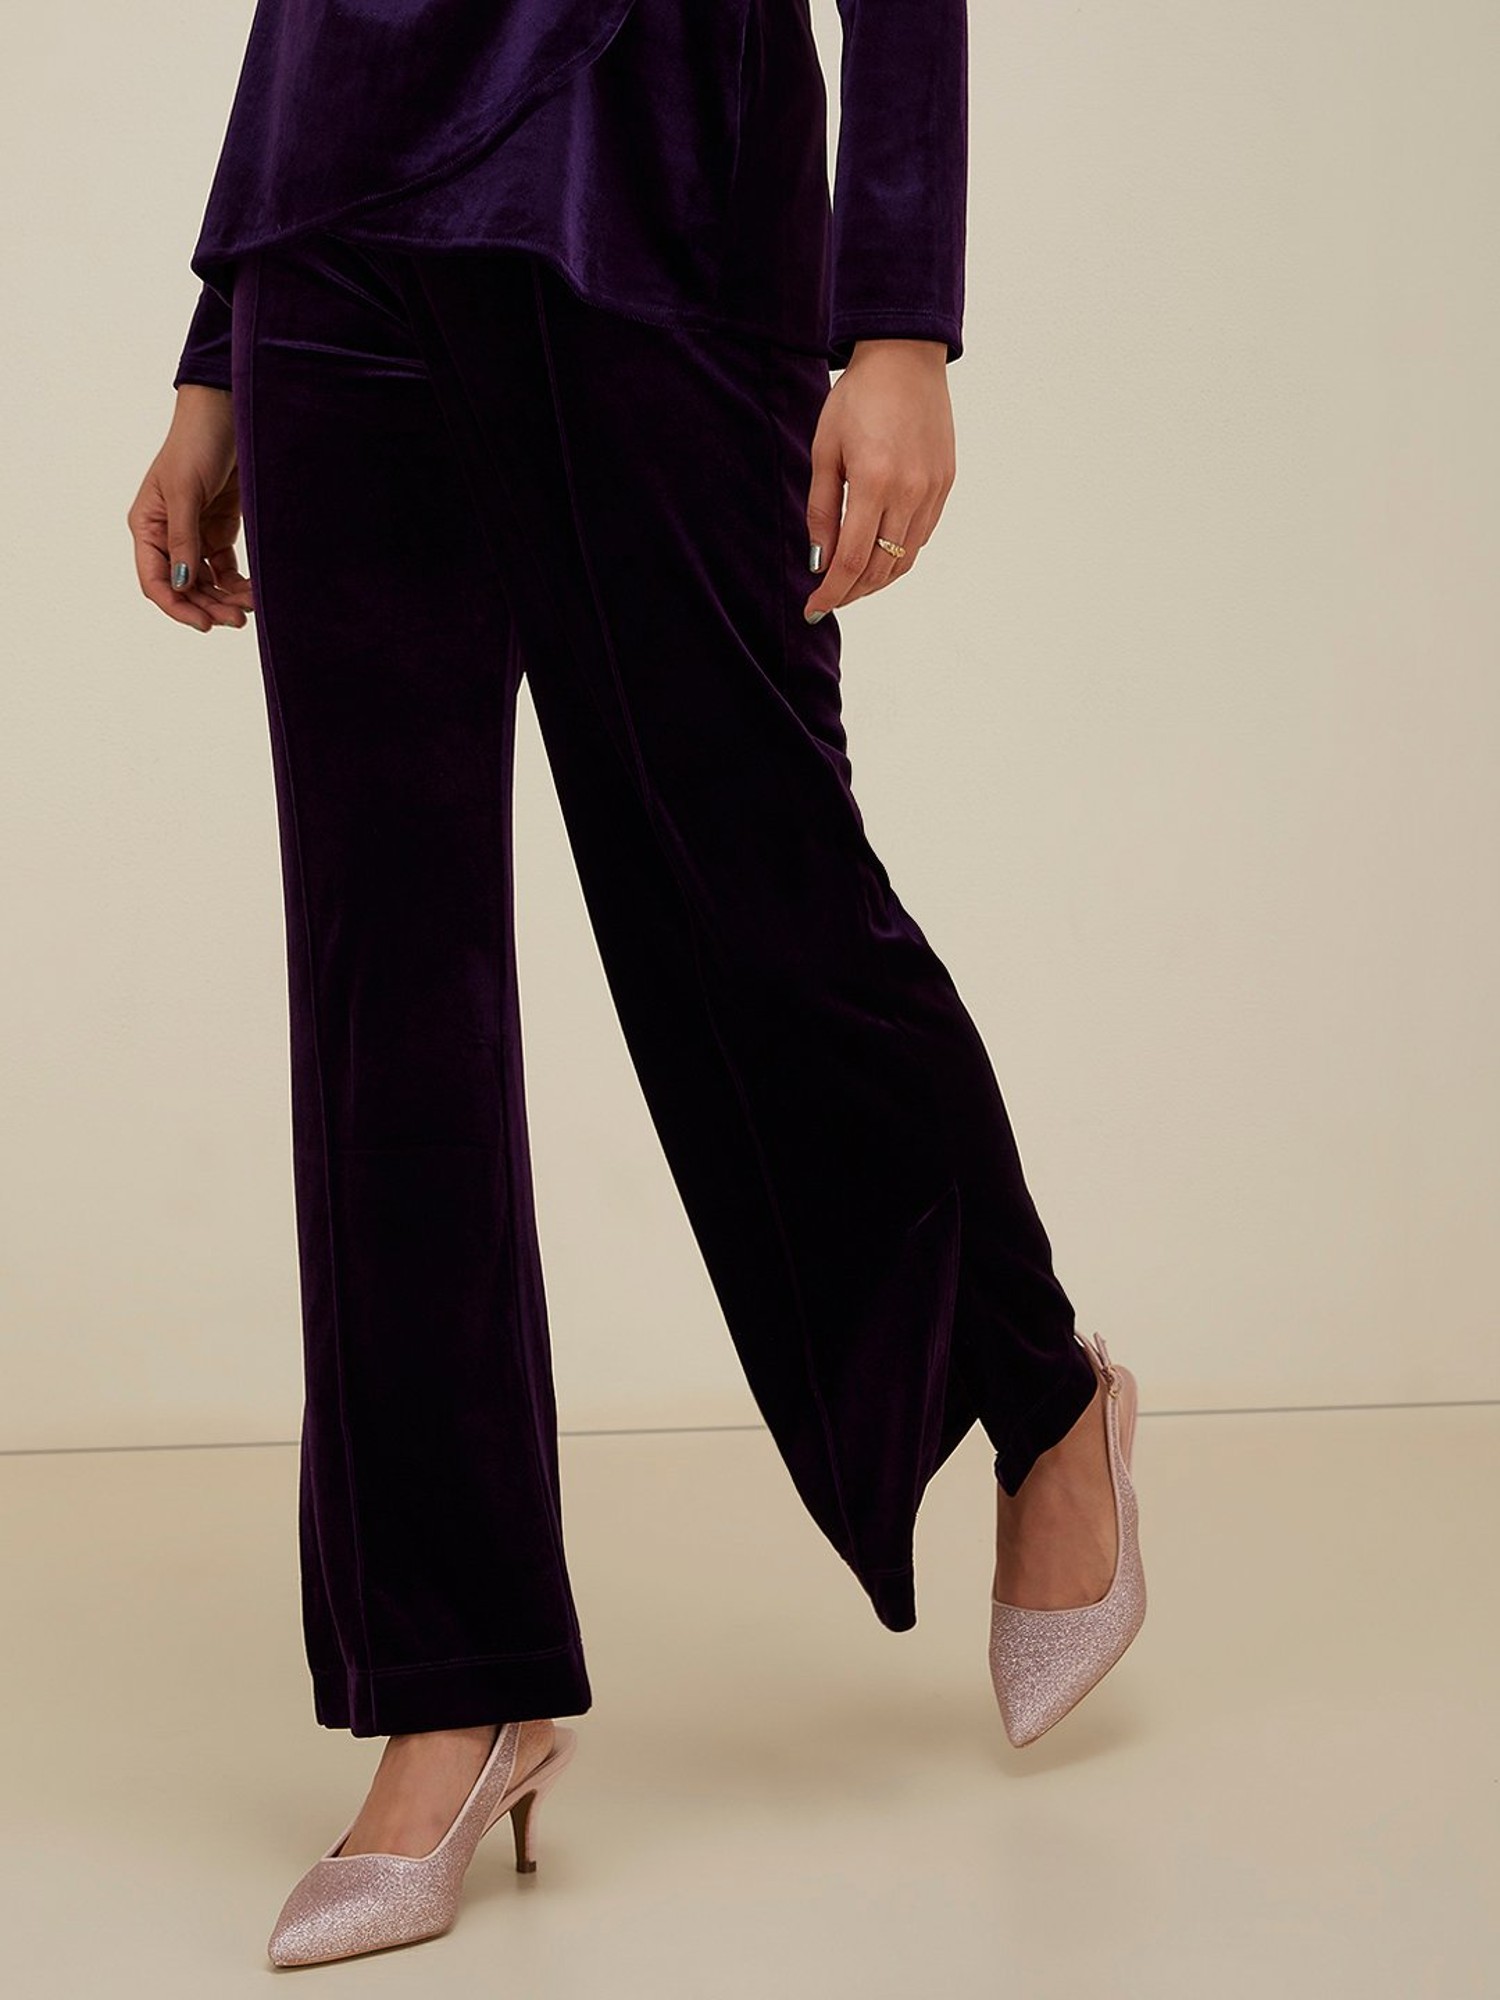 Buy Brown Velvet Embroidered Flared Pants Online At Best Price   Sassafrasin